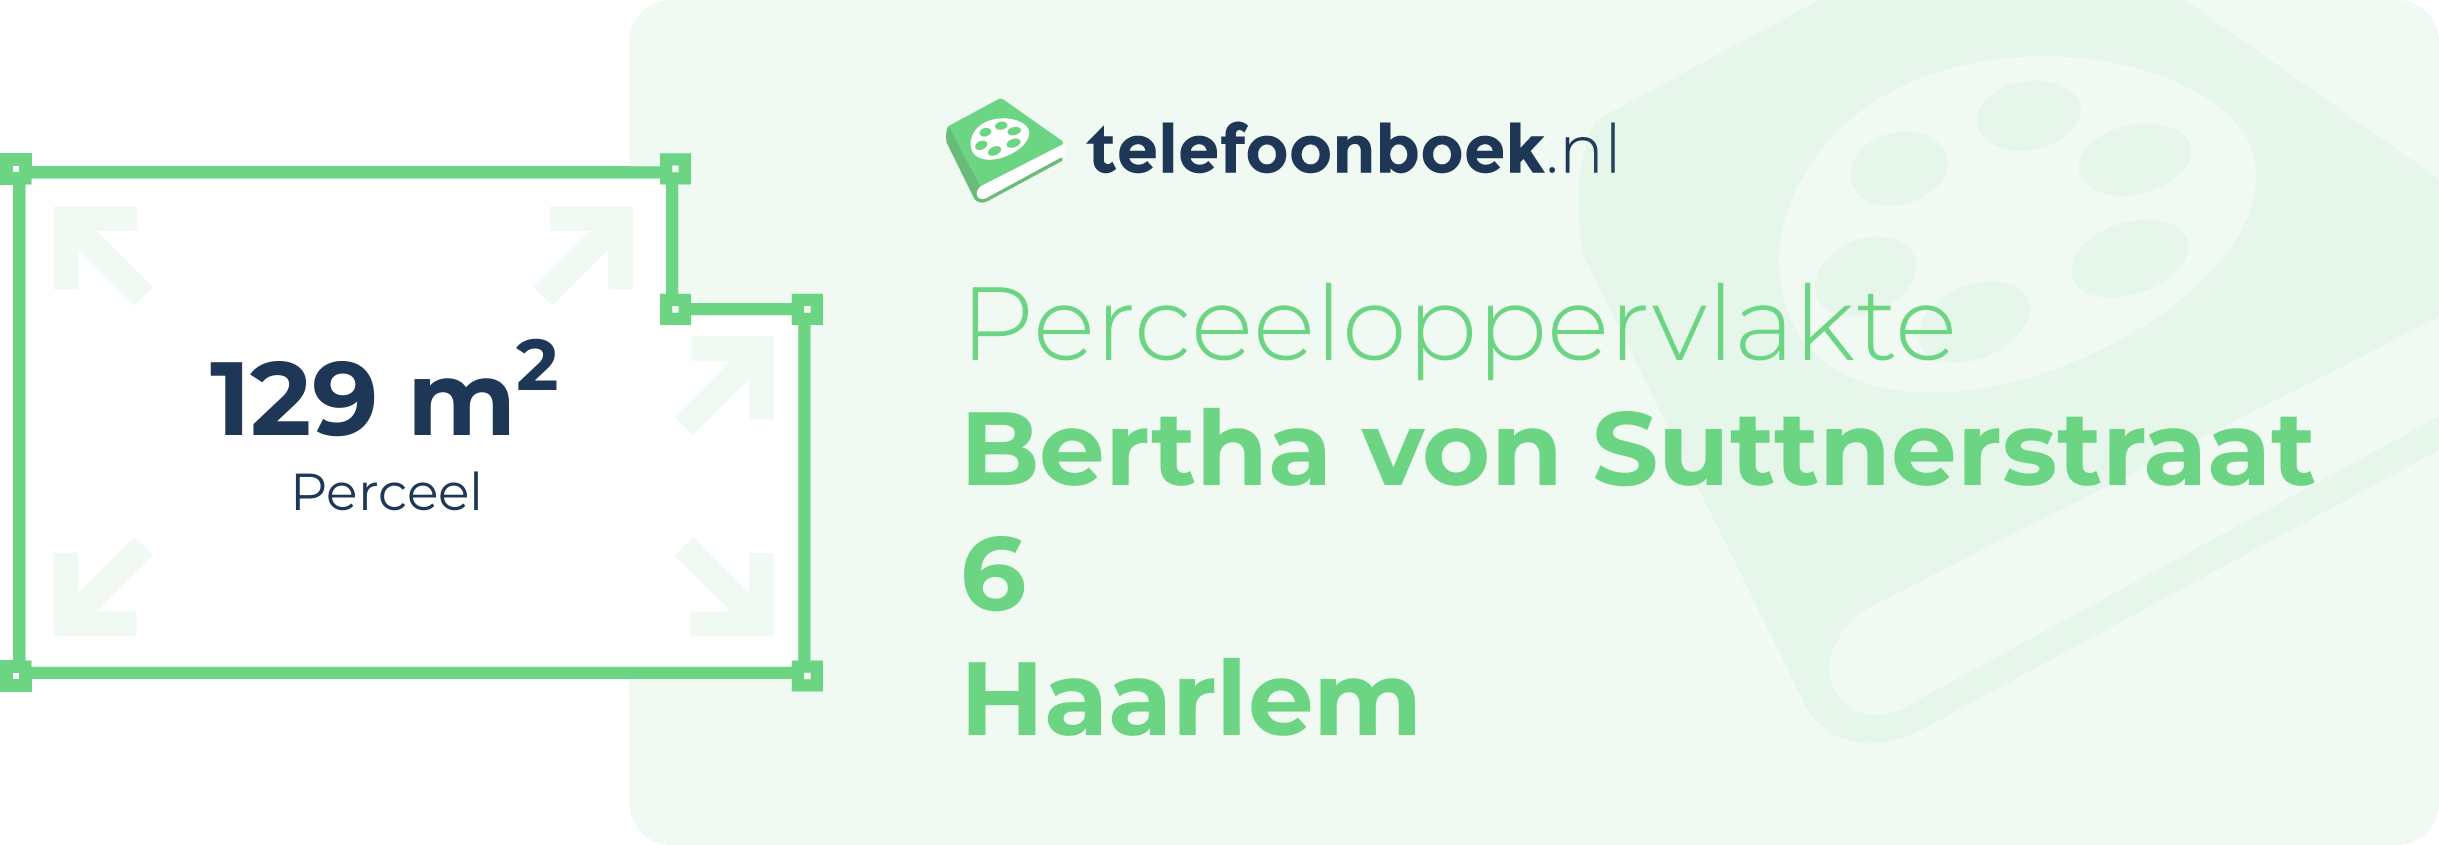 Perceeloppervlakte Bertha Von Suttnerstraat 6 Haarlem